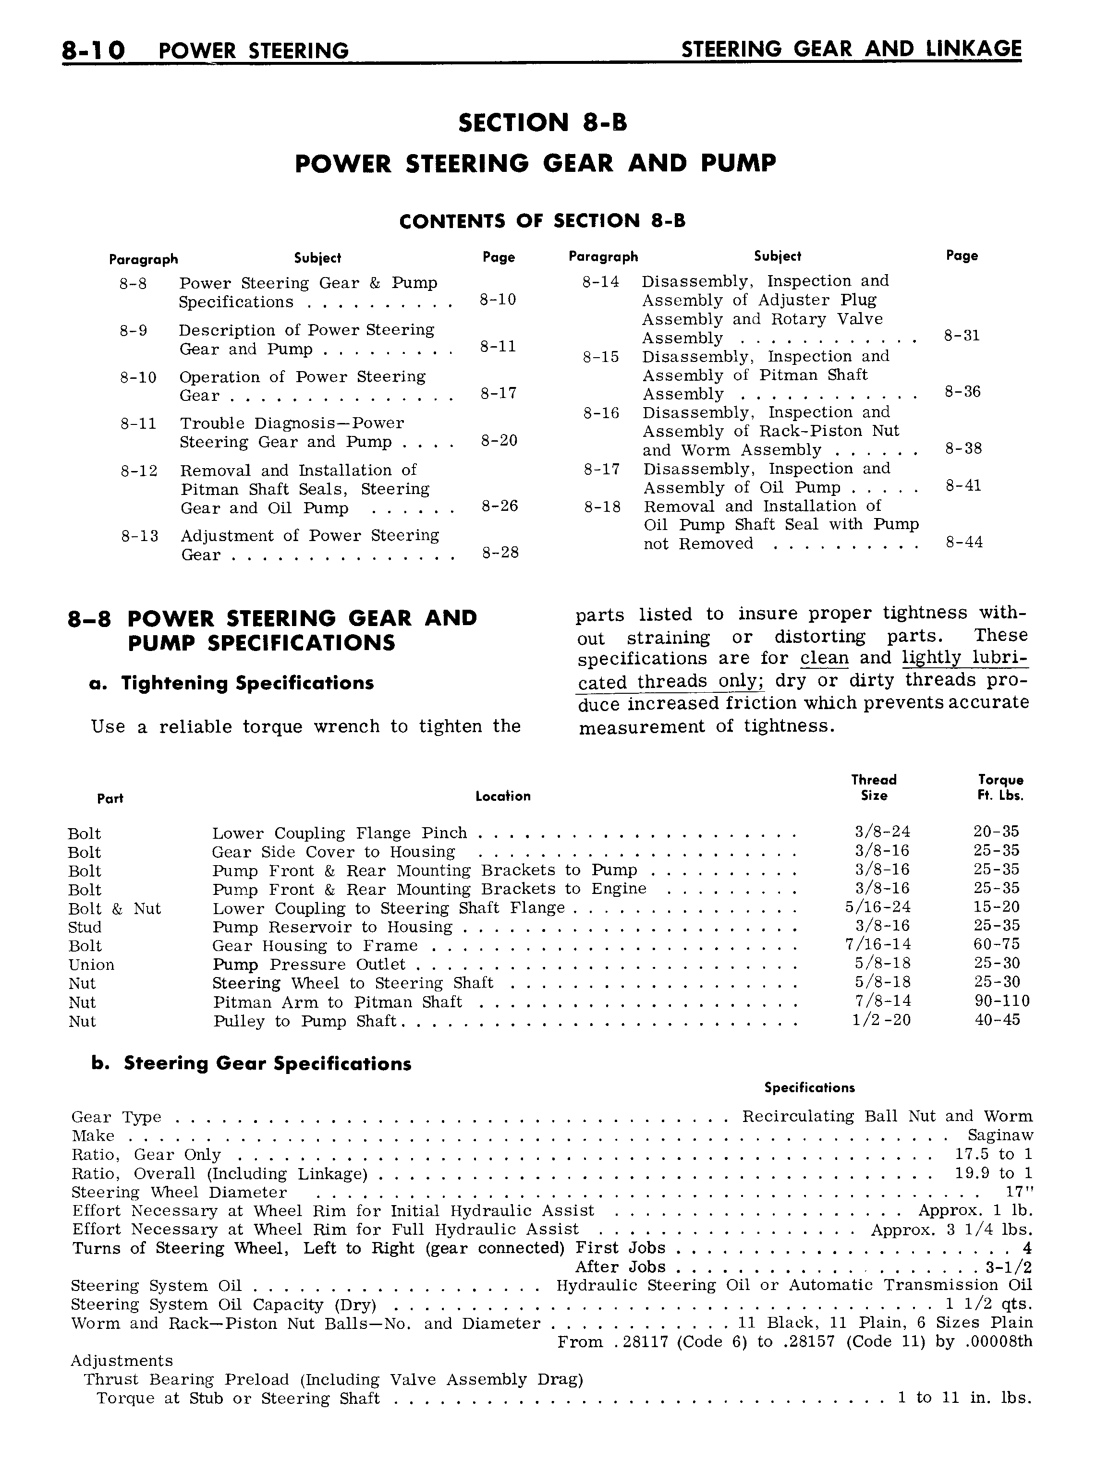 n_08 1961 Buick Shop Manual - Steering-010-010.jpg